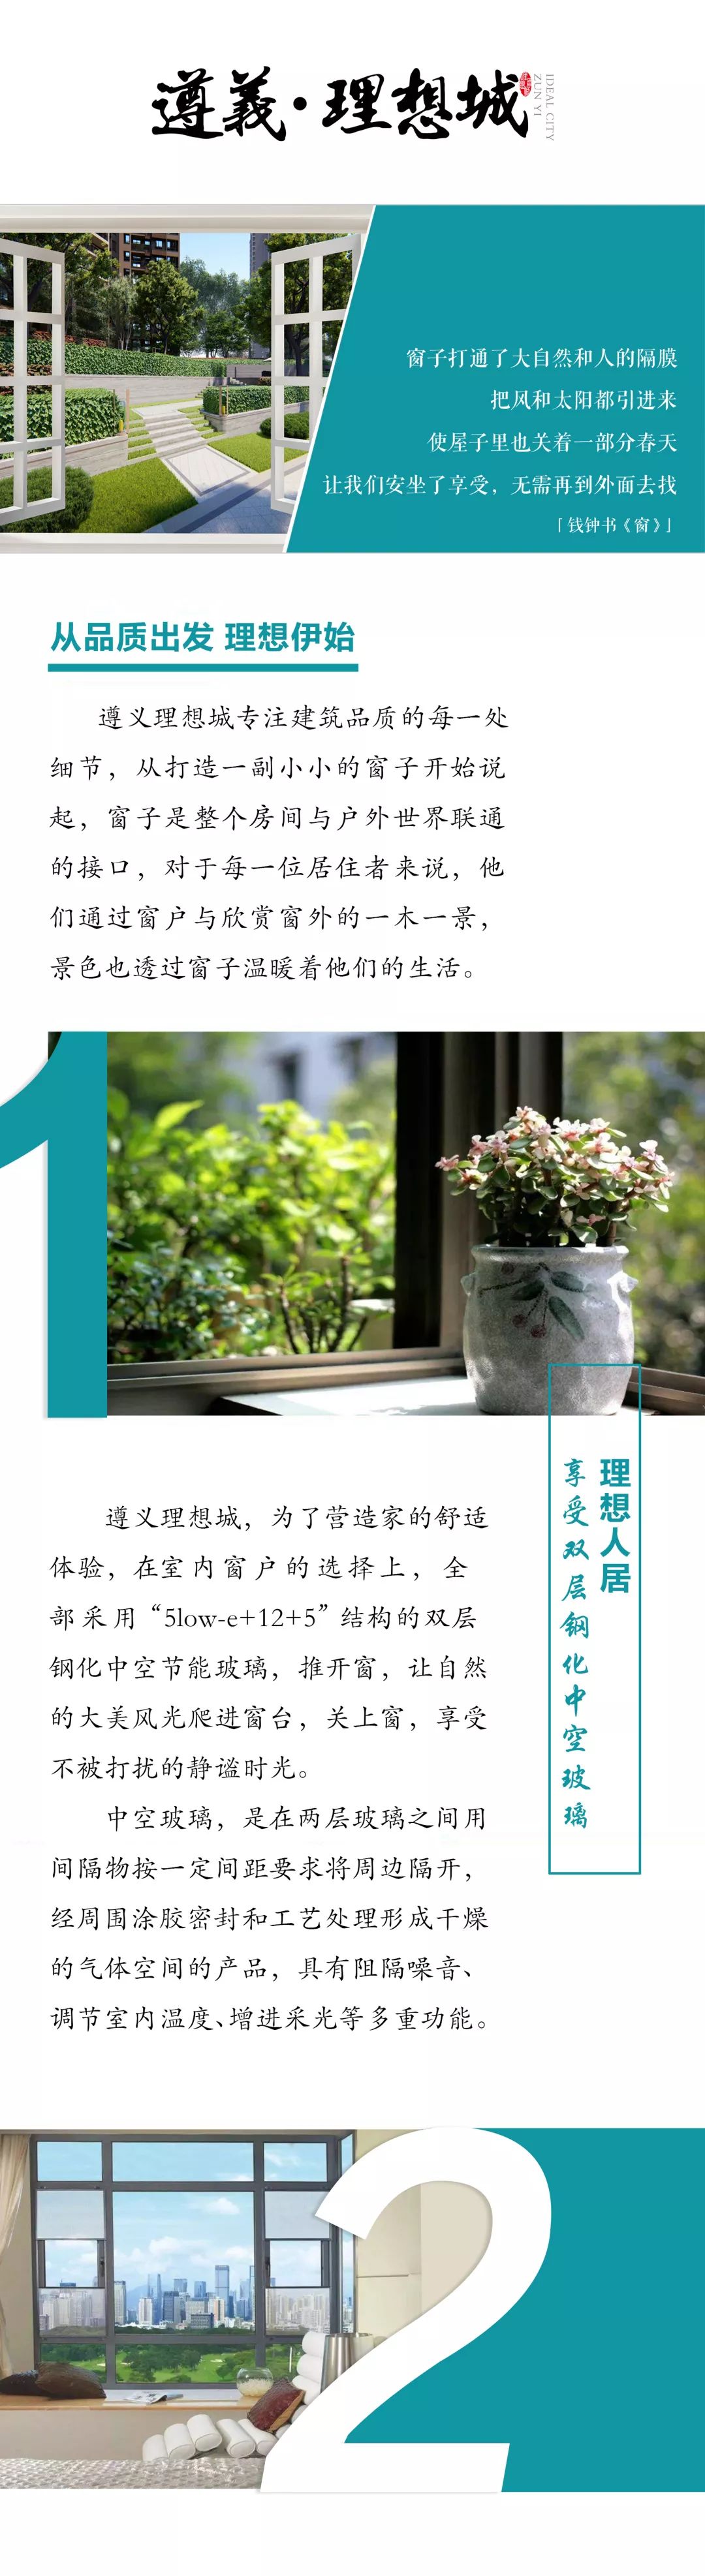 遵义·理想城品质 透过一扇窗 看到幸福的模样-中国网地产